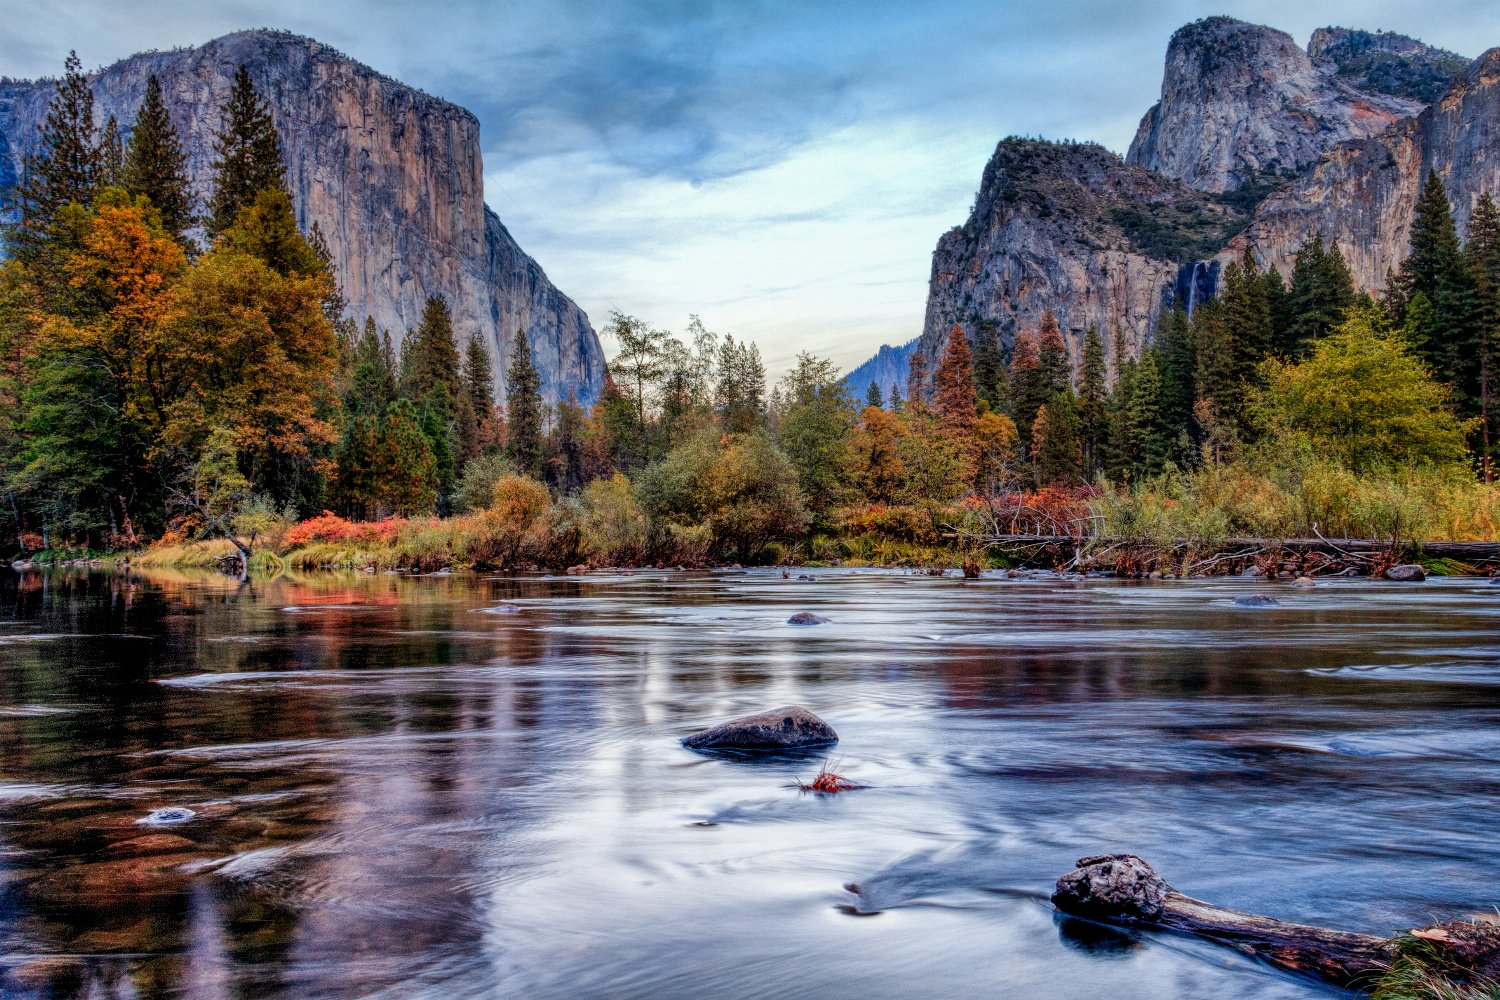 El Capitan in US national park Yosemite